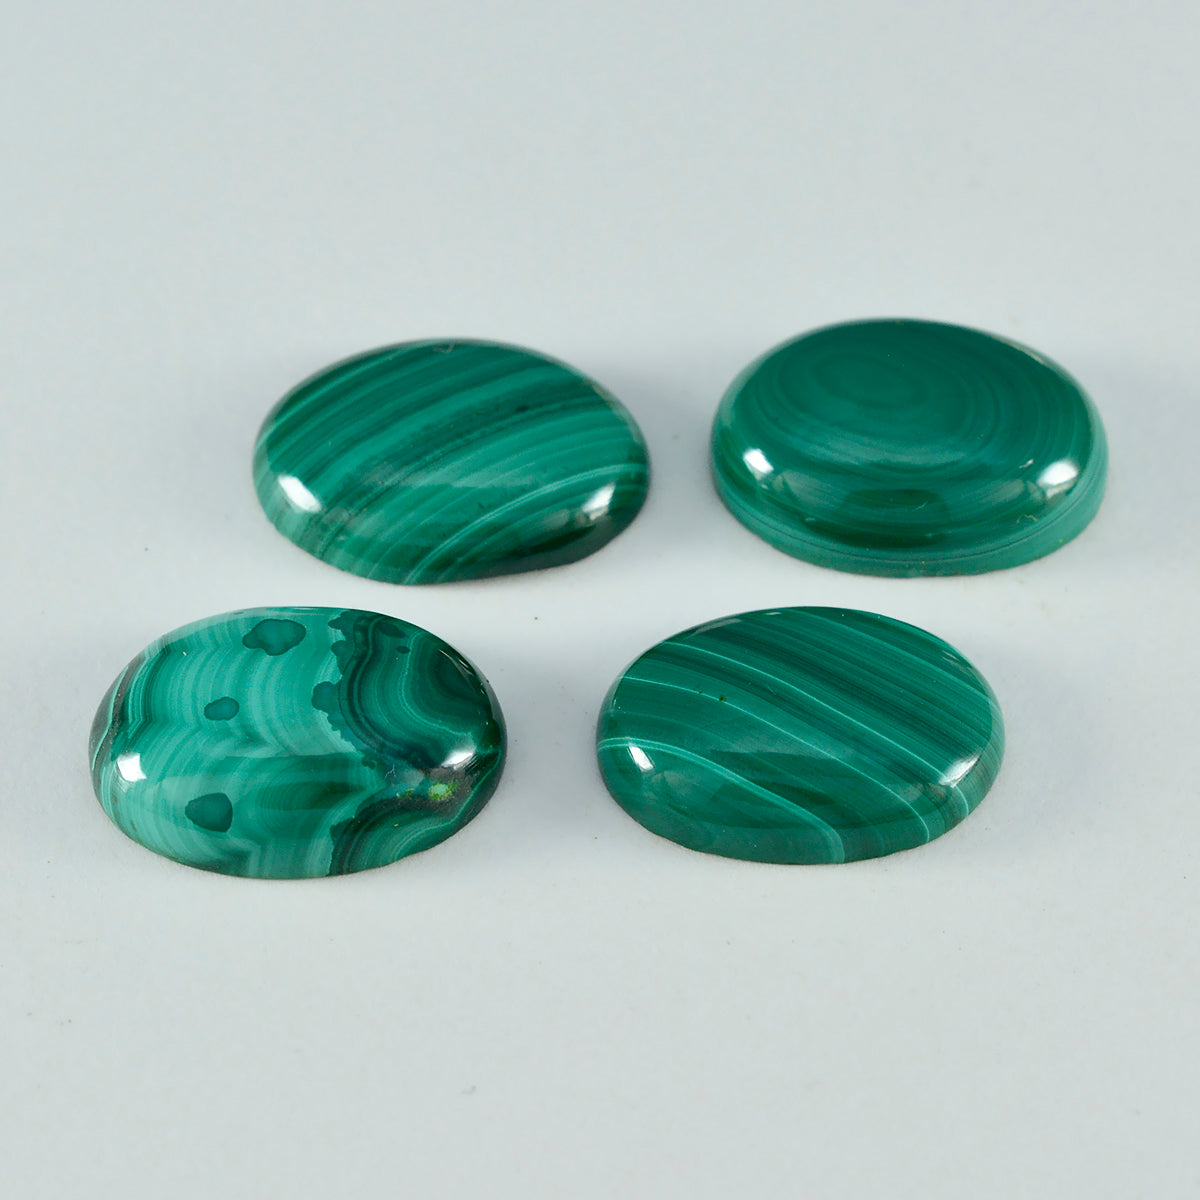 riyogems 1pc cabochon de malachite verte 10x12 mm forme ovale une pierre en vrac de qualité